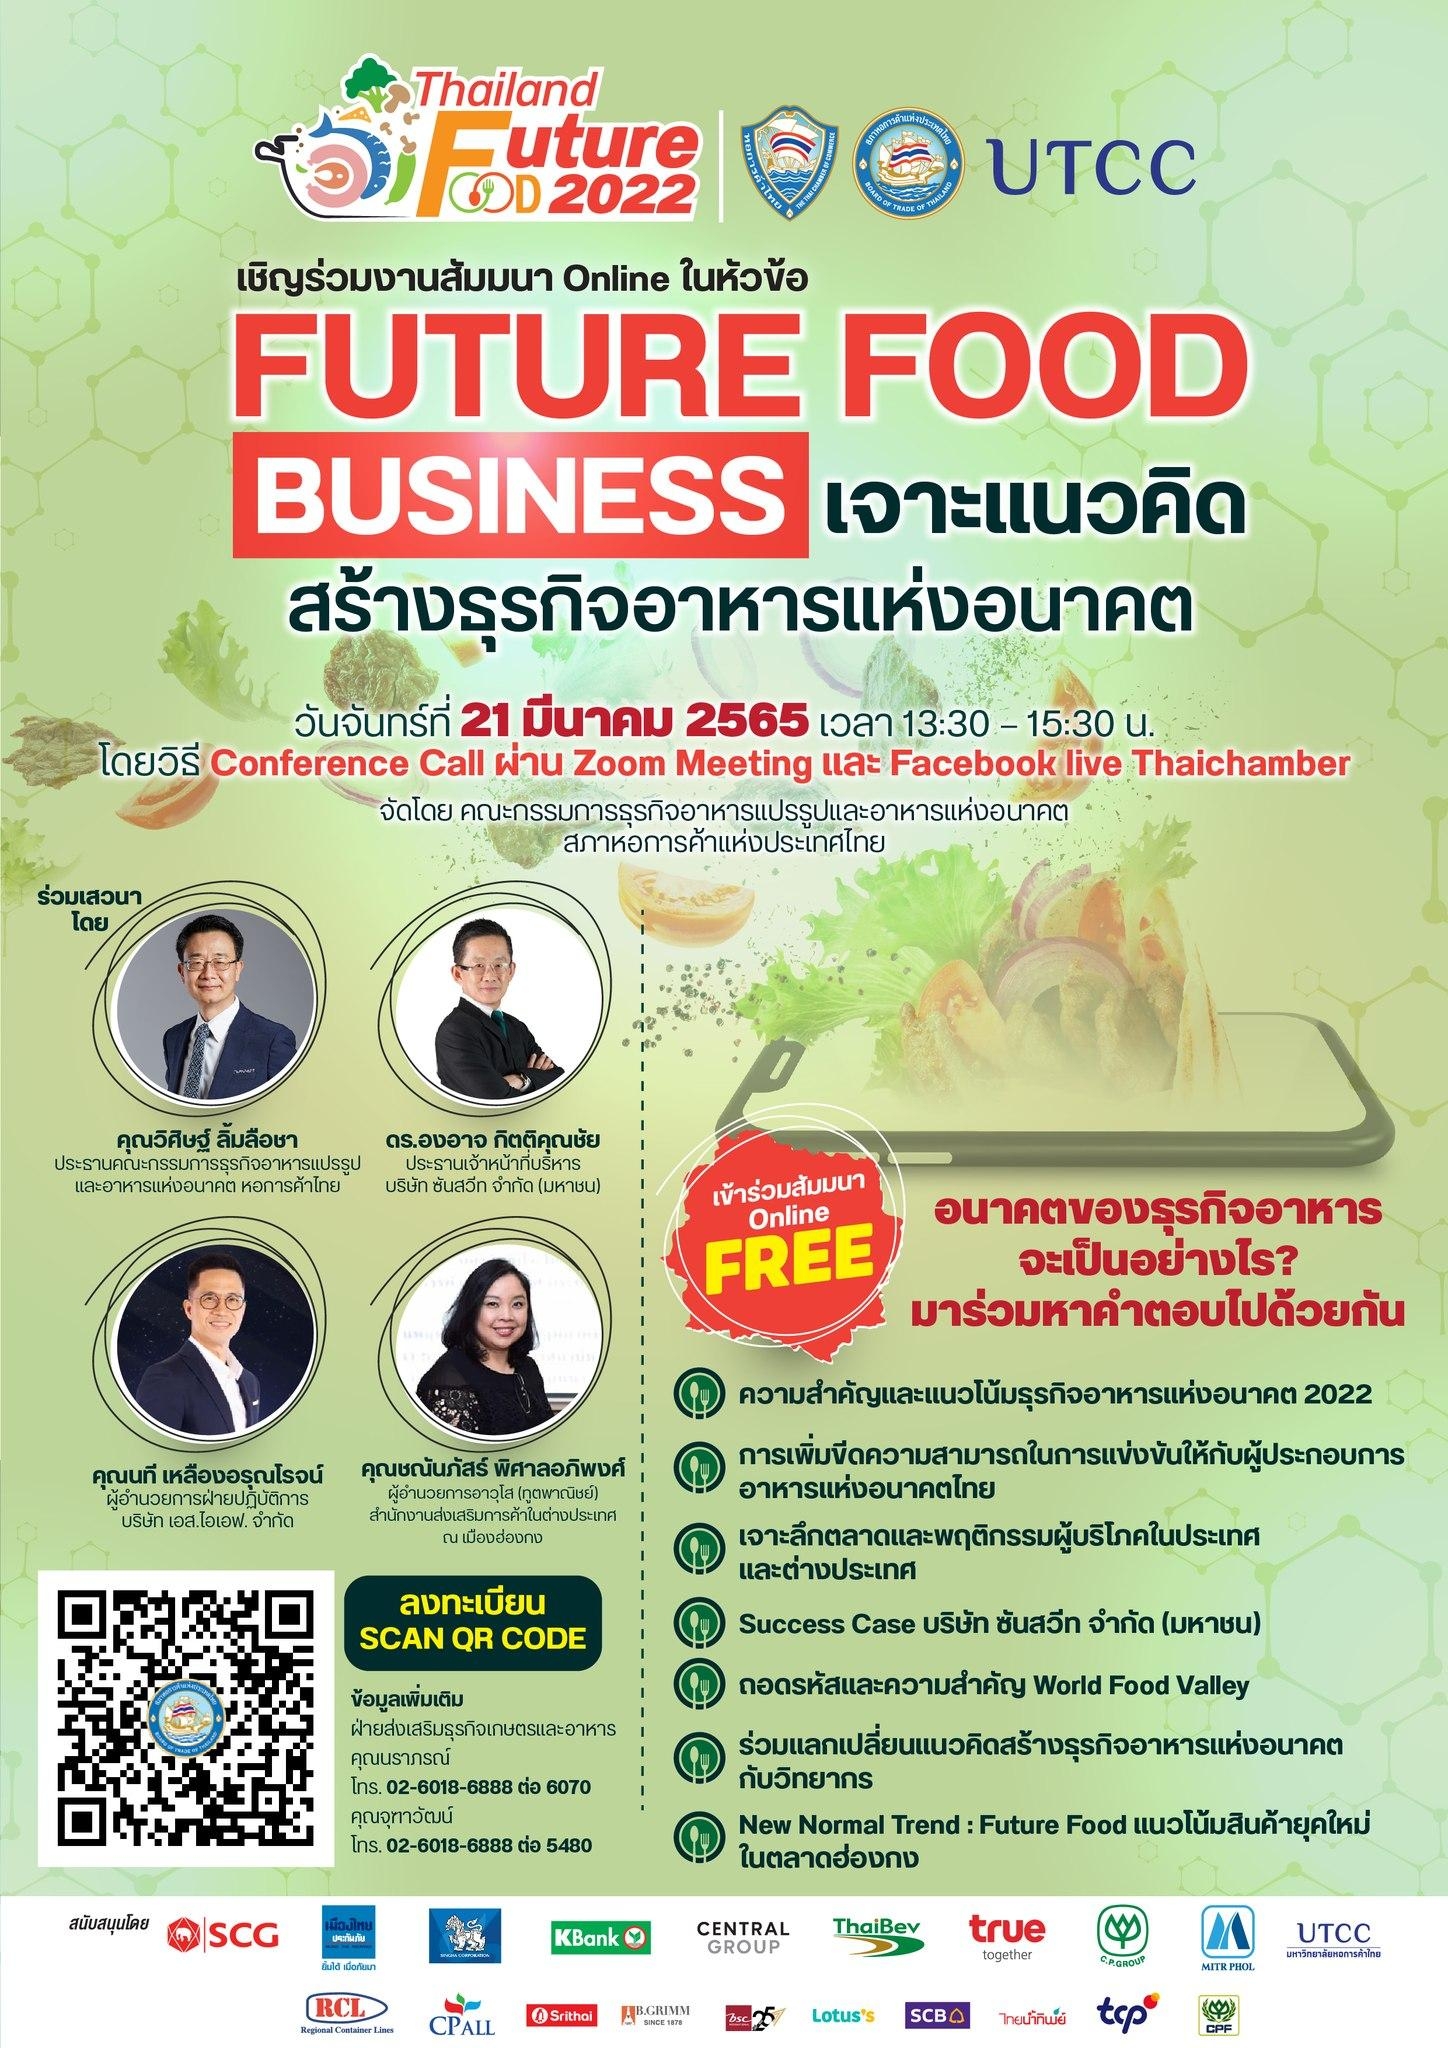 ขอเชิญสมาชิกผู้ประกอบการ เข้าร่วมสัมมนา Thailand Future Foods 2022 เรื่อง Future Food Business : เจาะแนวคิดสร้างธุรกิจอาหารแห่งอนาคต